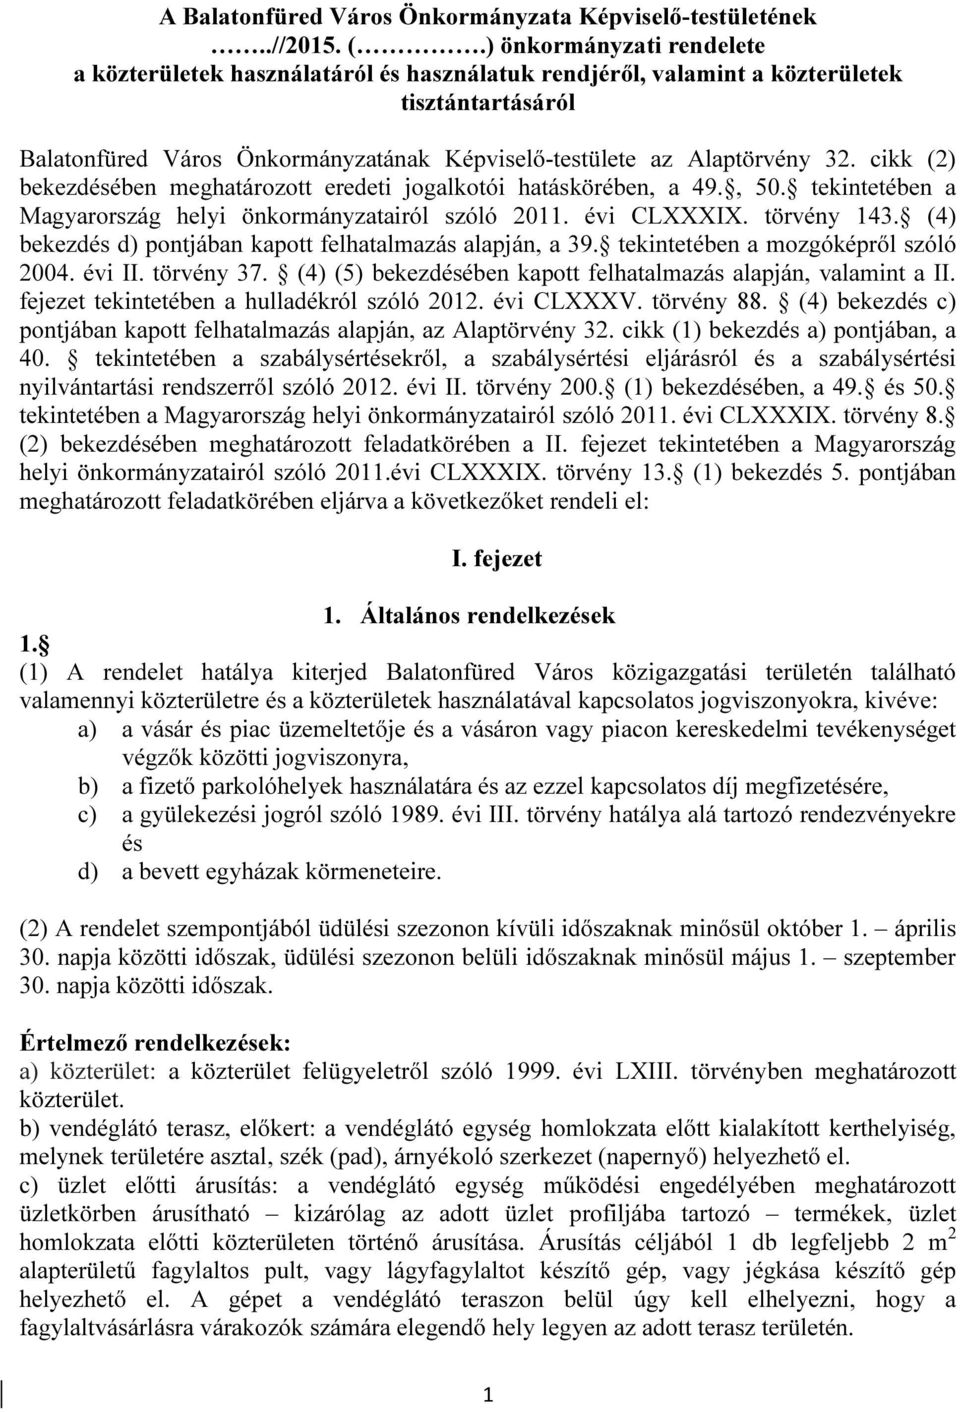 cikk (2) bekezdésében meghatározott eredeti jogalkotói hatáskörében, a 49., 50. tekintetében a Magyarország helyi önkormányzatairól szóló 2011. évi CLXXXIX. törvény 143.